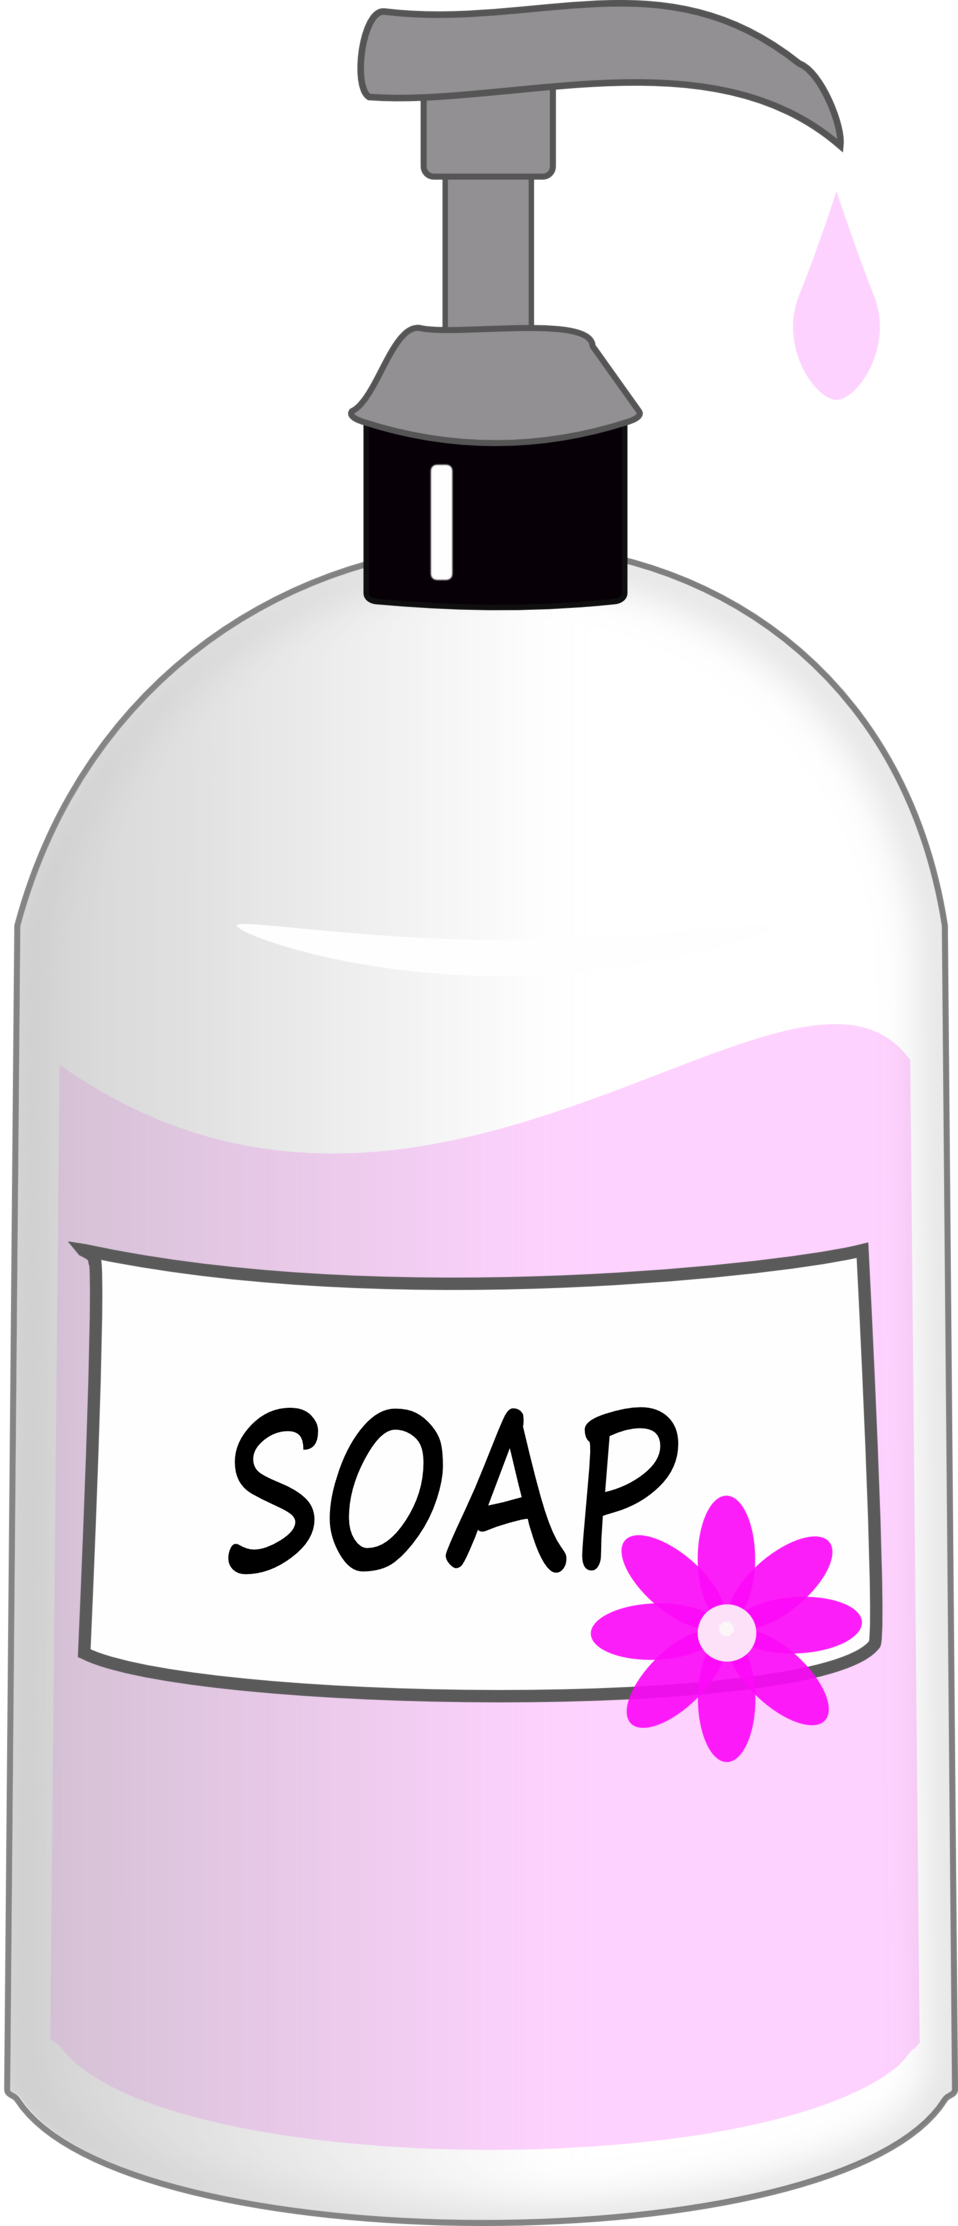 clipart images soap